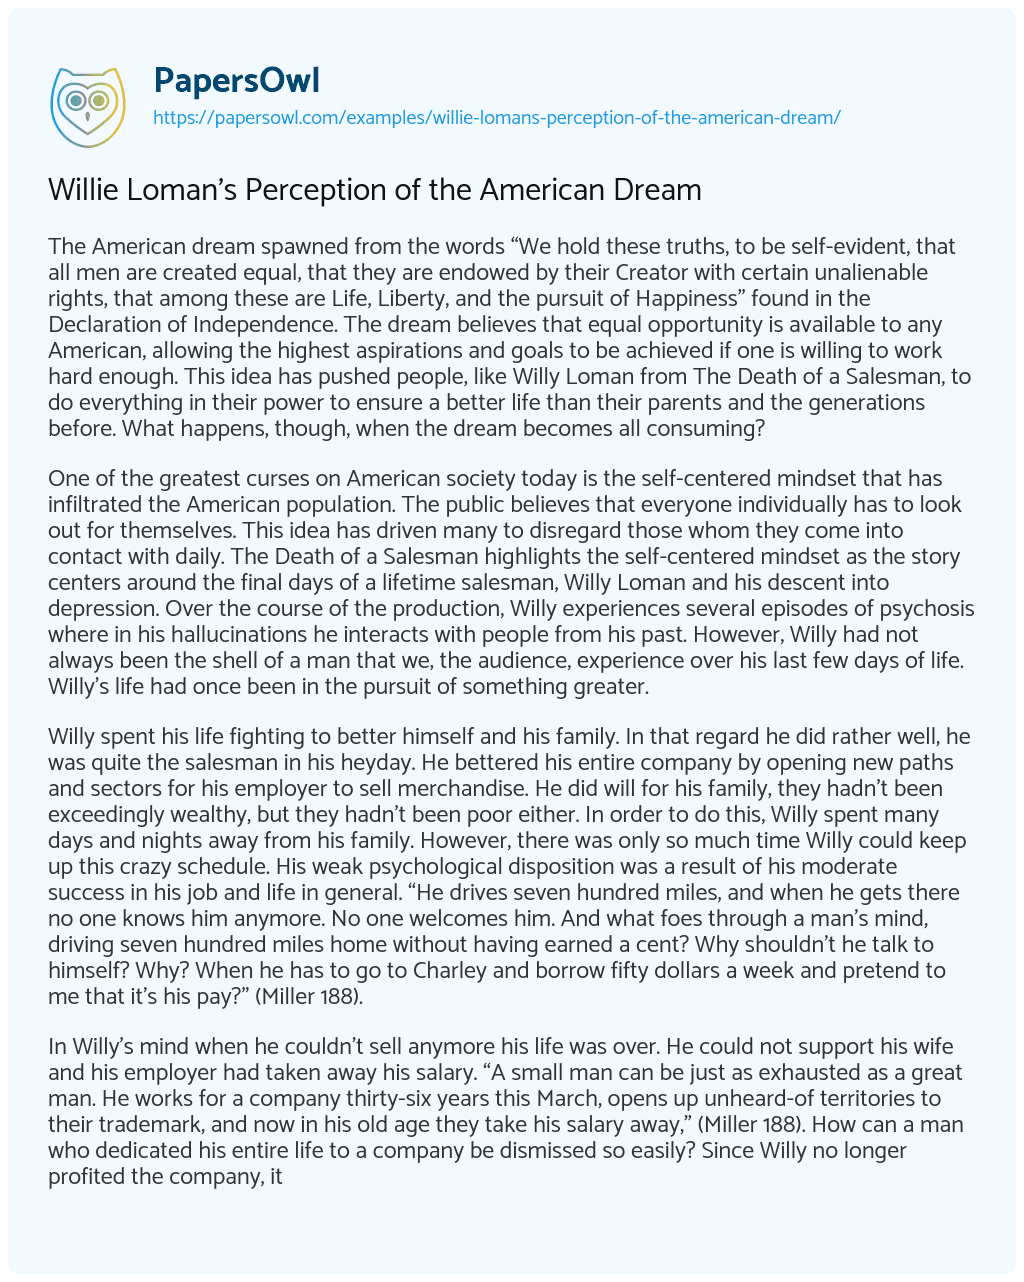 Willie Loman’s Perception of the American Dream essay